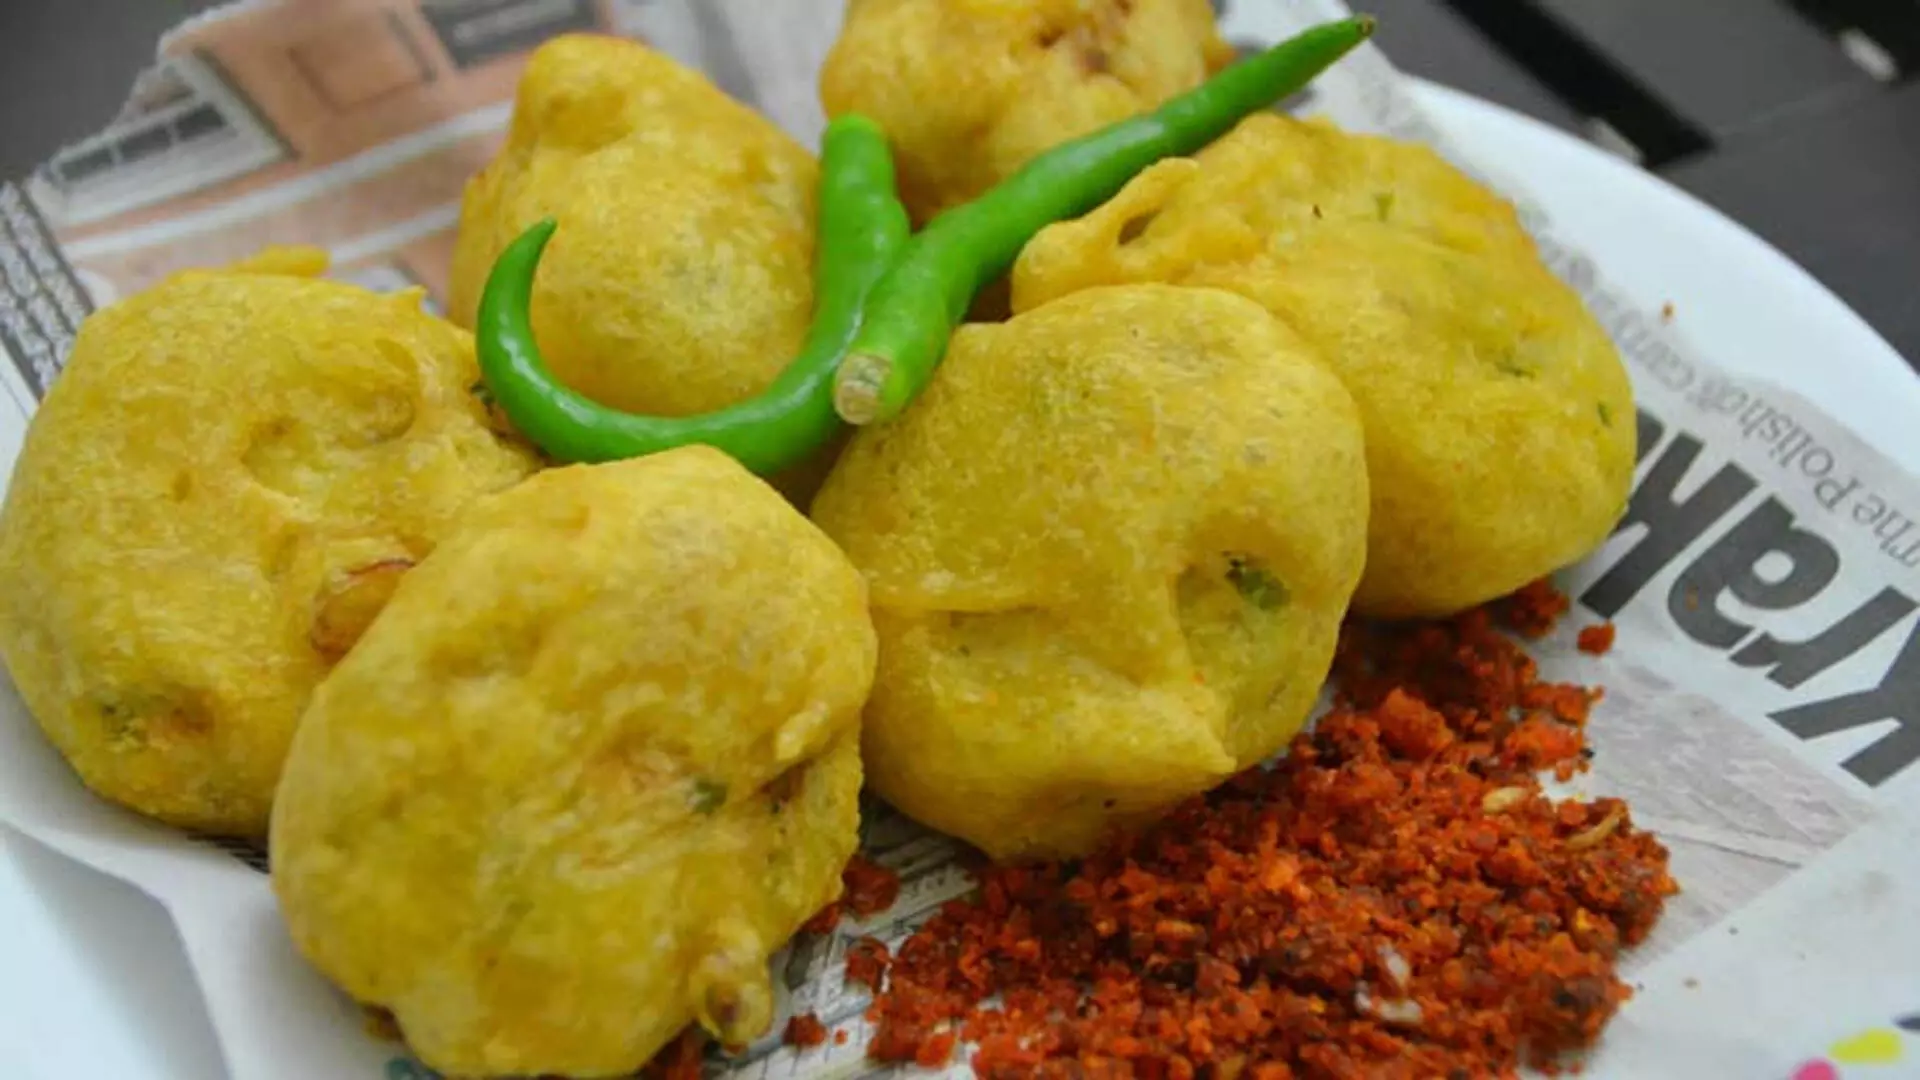 मुंबई की बेहतरीन डिश है बटाटा वड़ा, वीकेंड पर ले इसका मजा